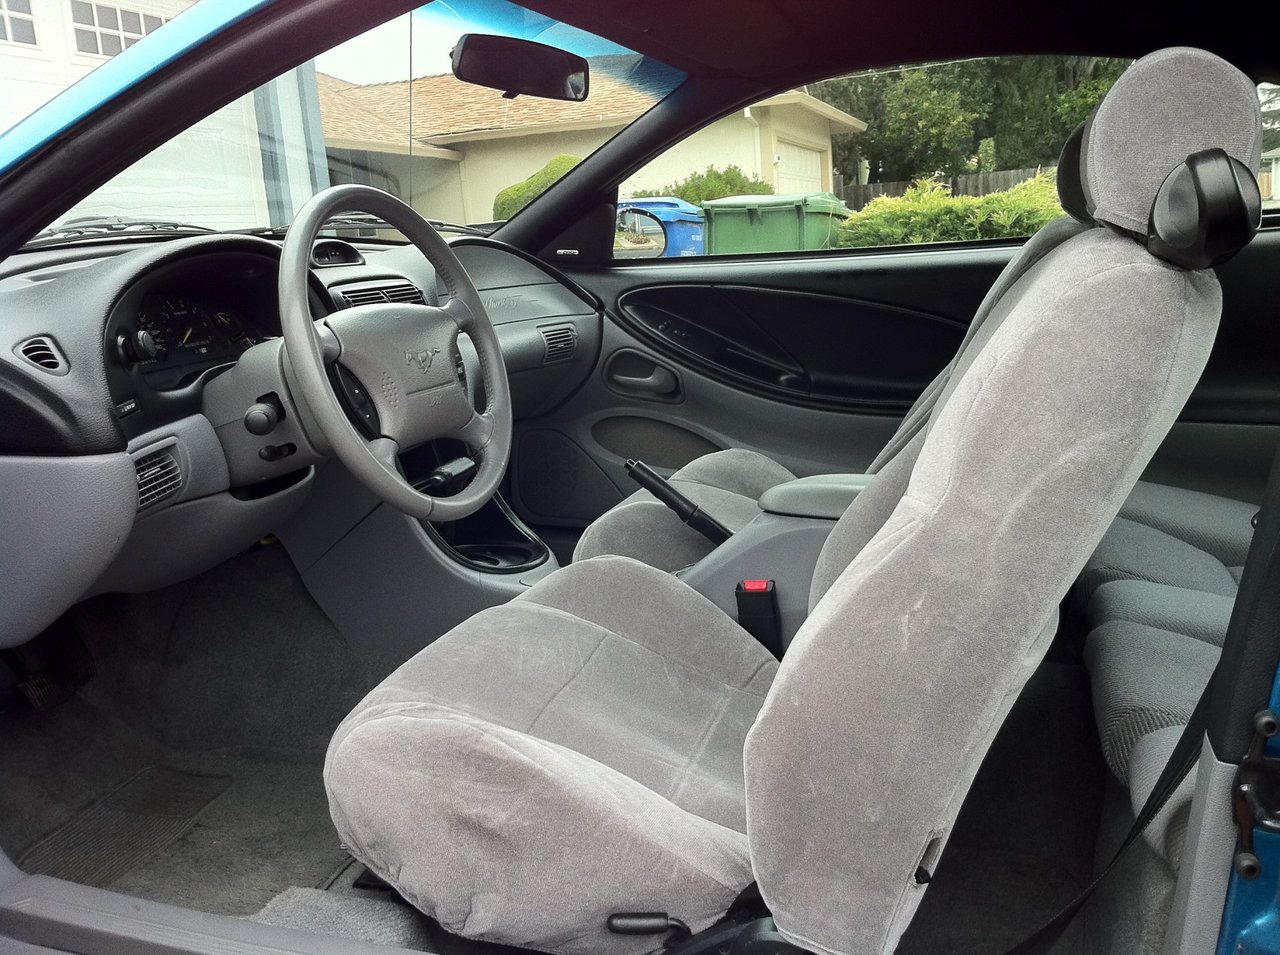 1994 GT interior